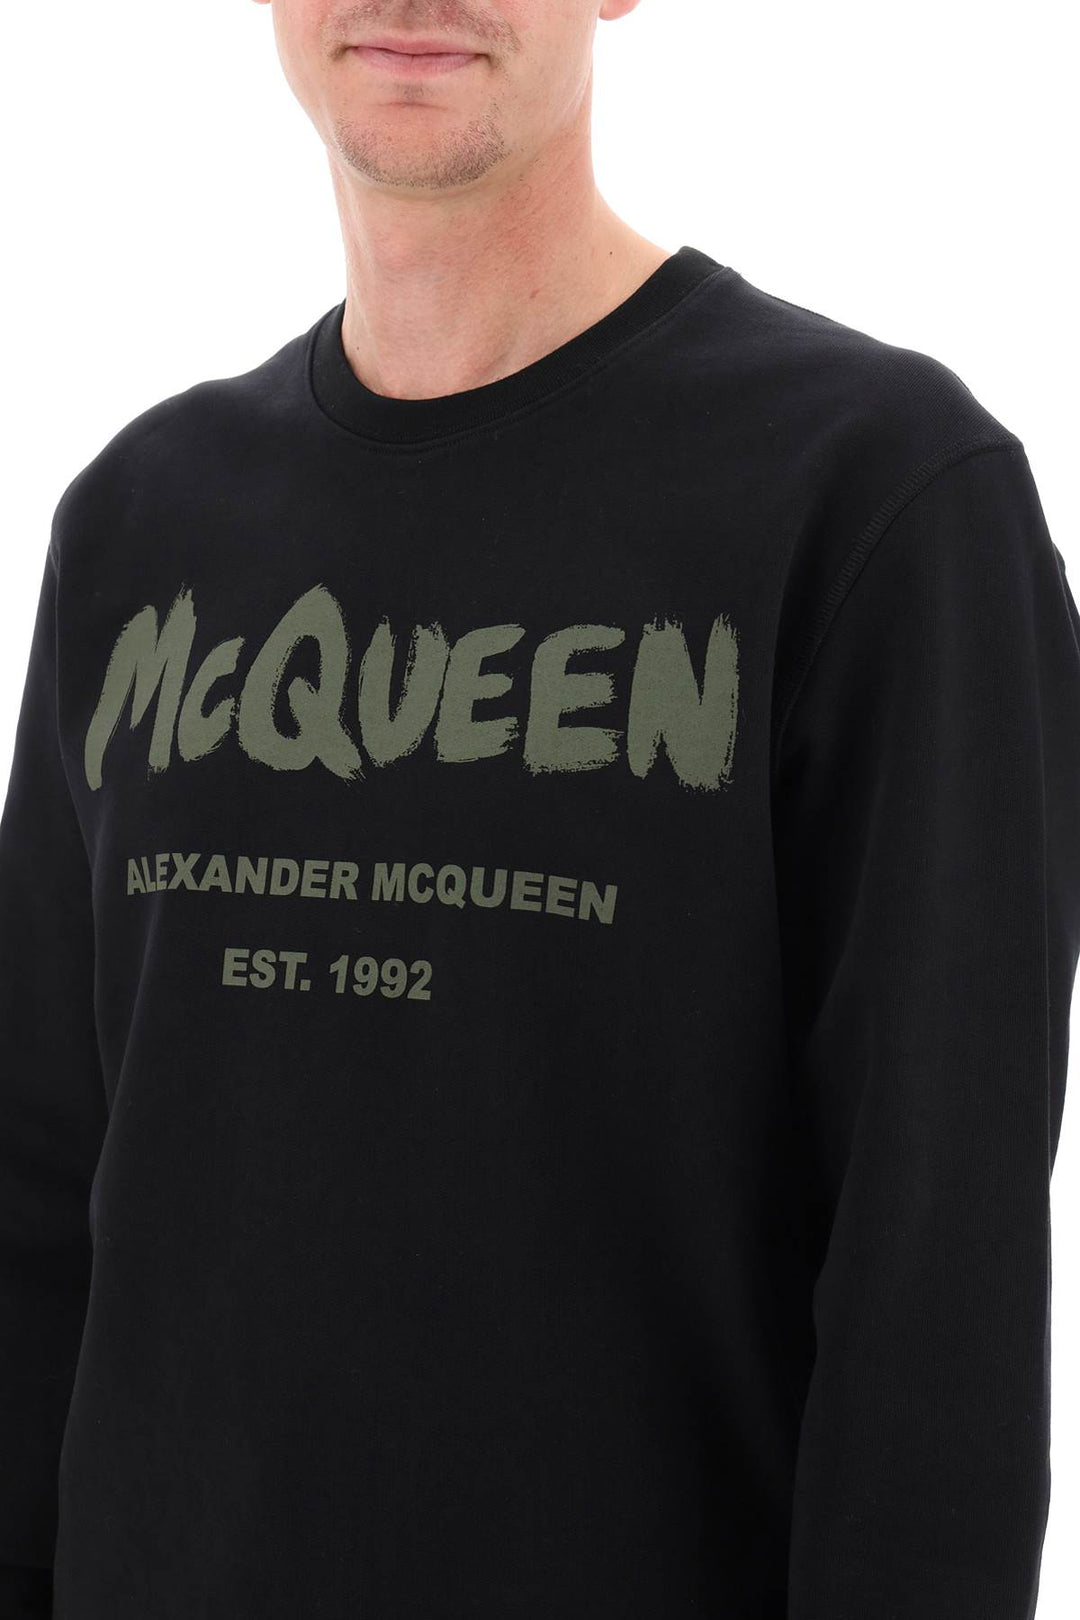 Alexander mcqueen mcqueen graffiti sweatshirt-3